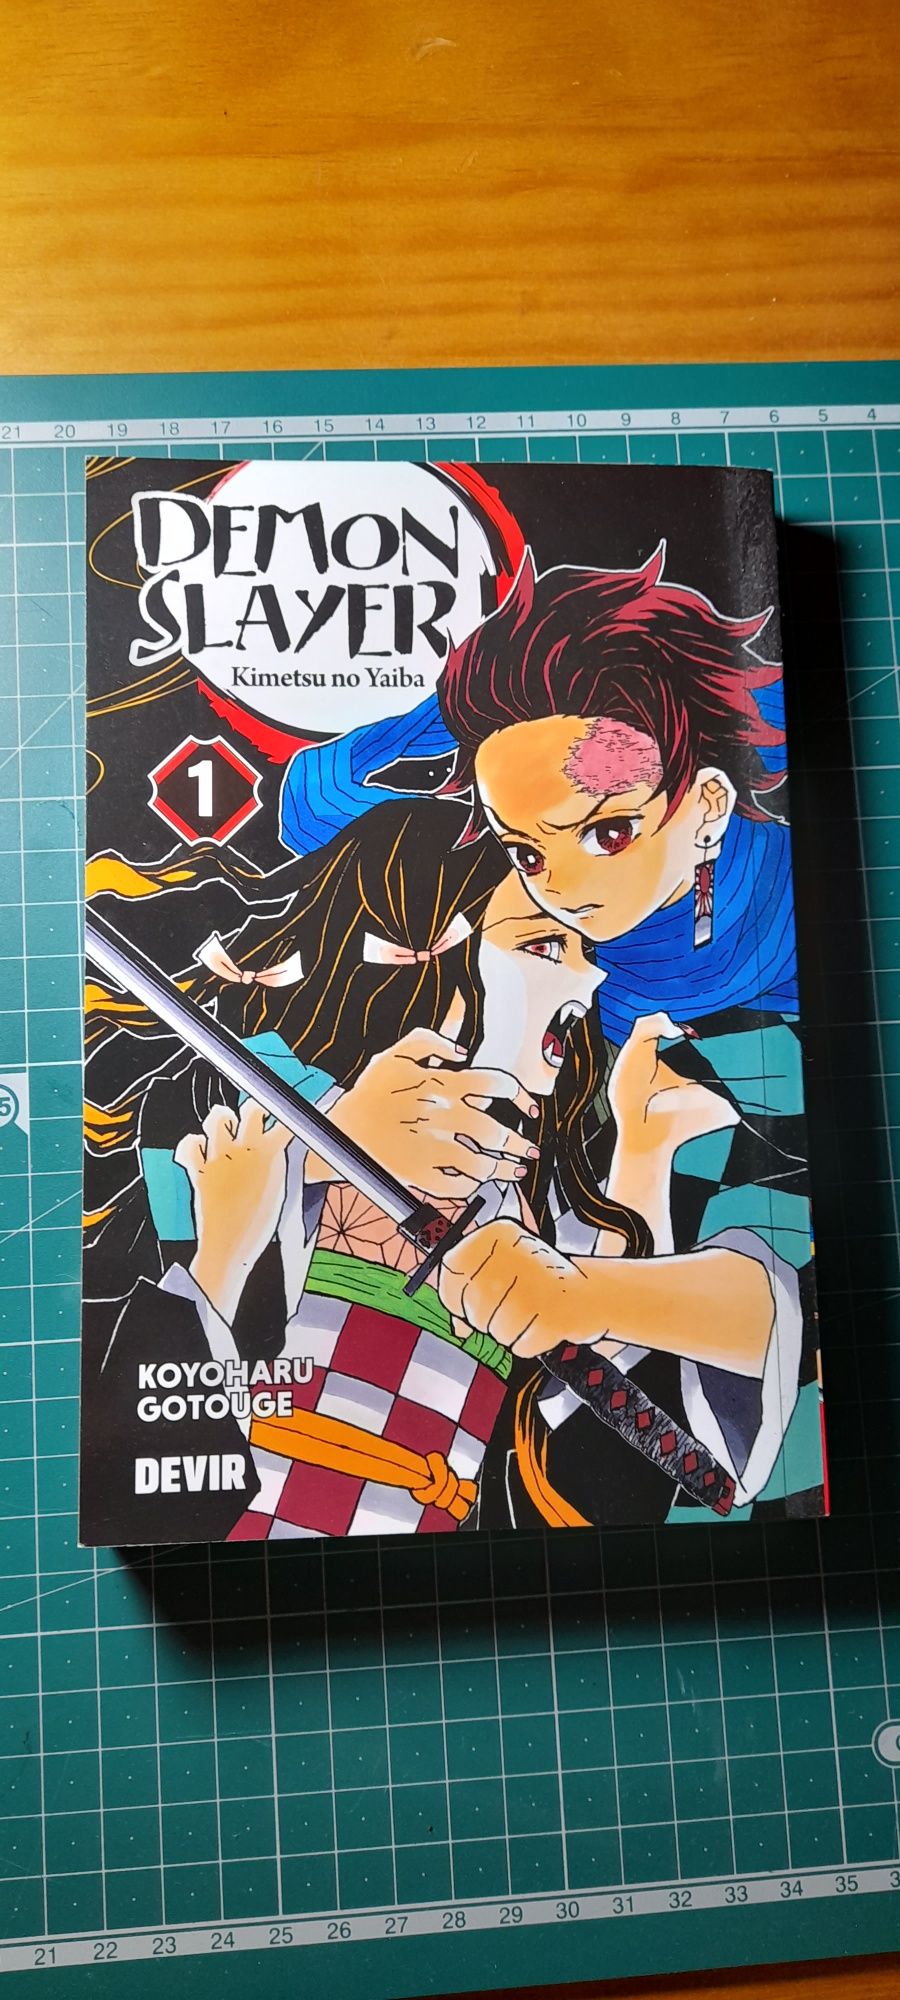 Livro "Demon Slayer kimetsu no yaiba"